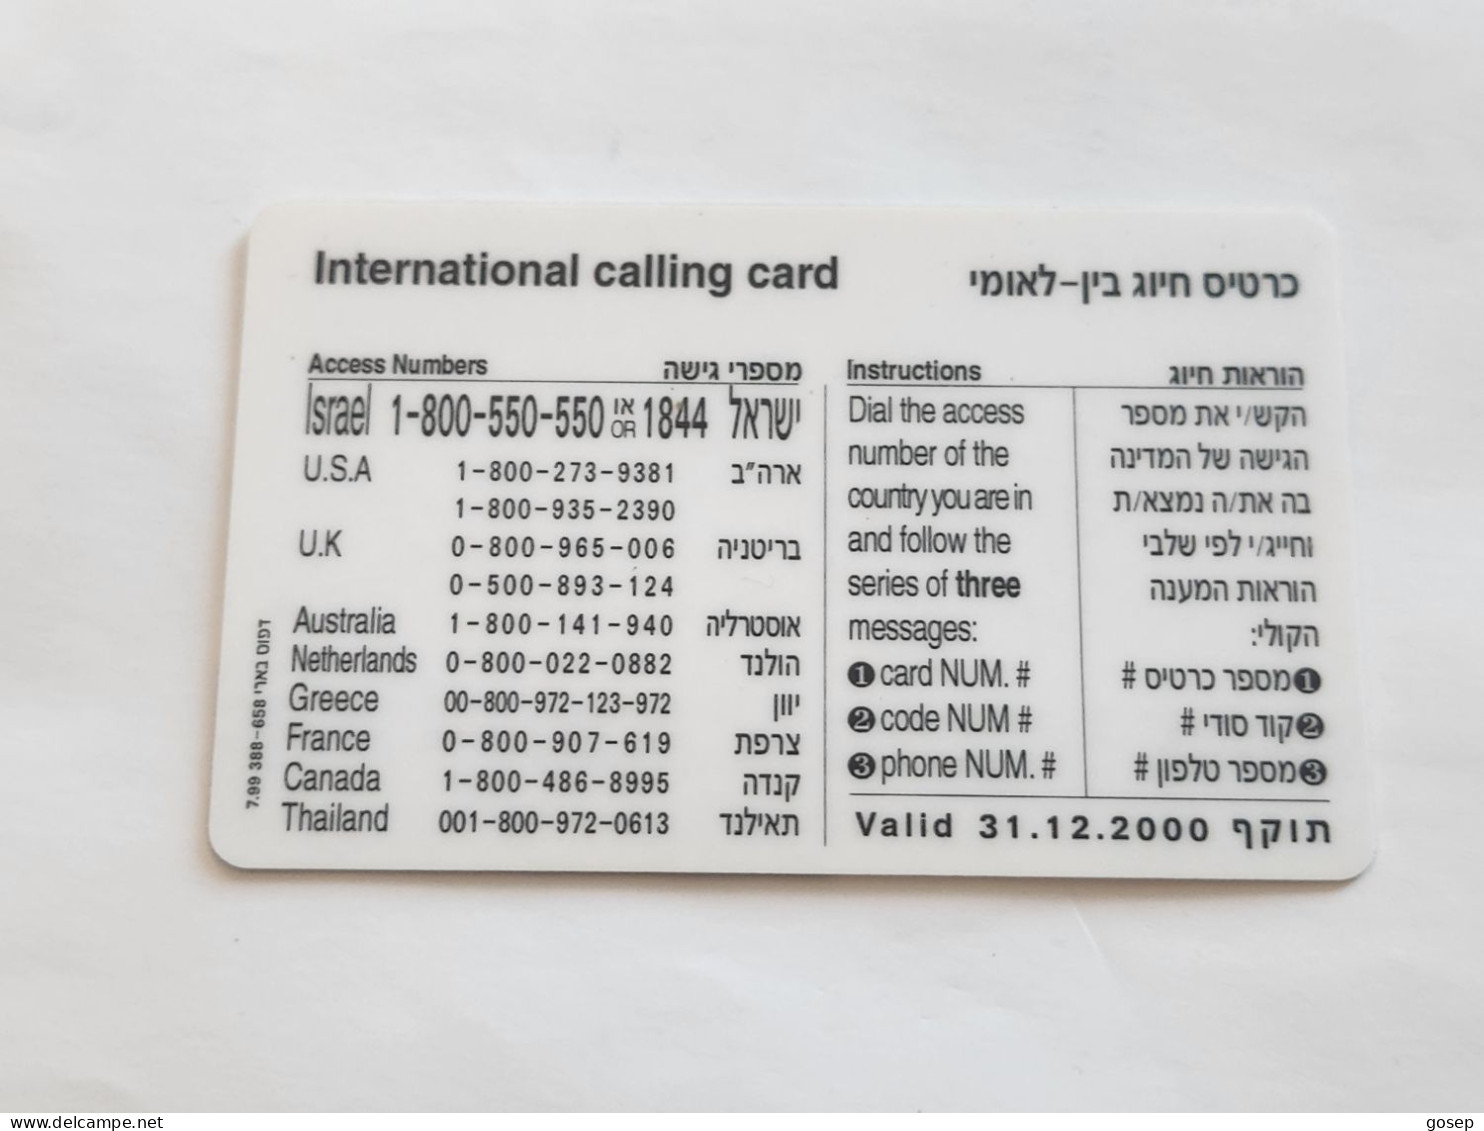 ISRAEL-(BEZ-INTER-744)LIMOR LIVNAT Communication Server-H-(56)(100uits)(16605701-3742)(plastic Card)Expansive Card - Israel